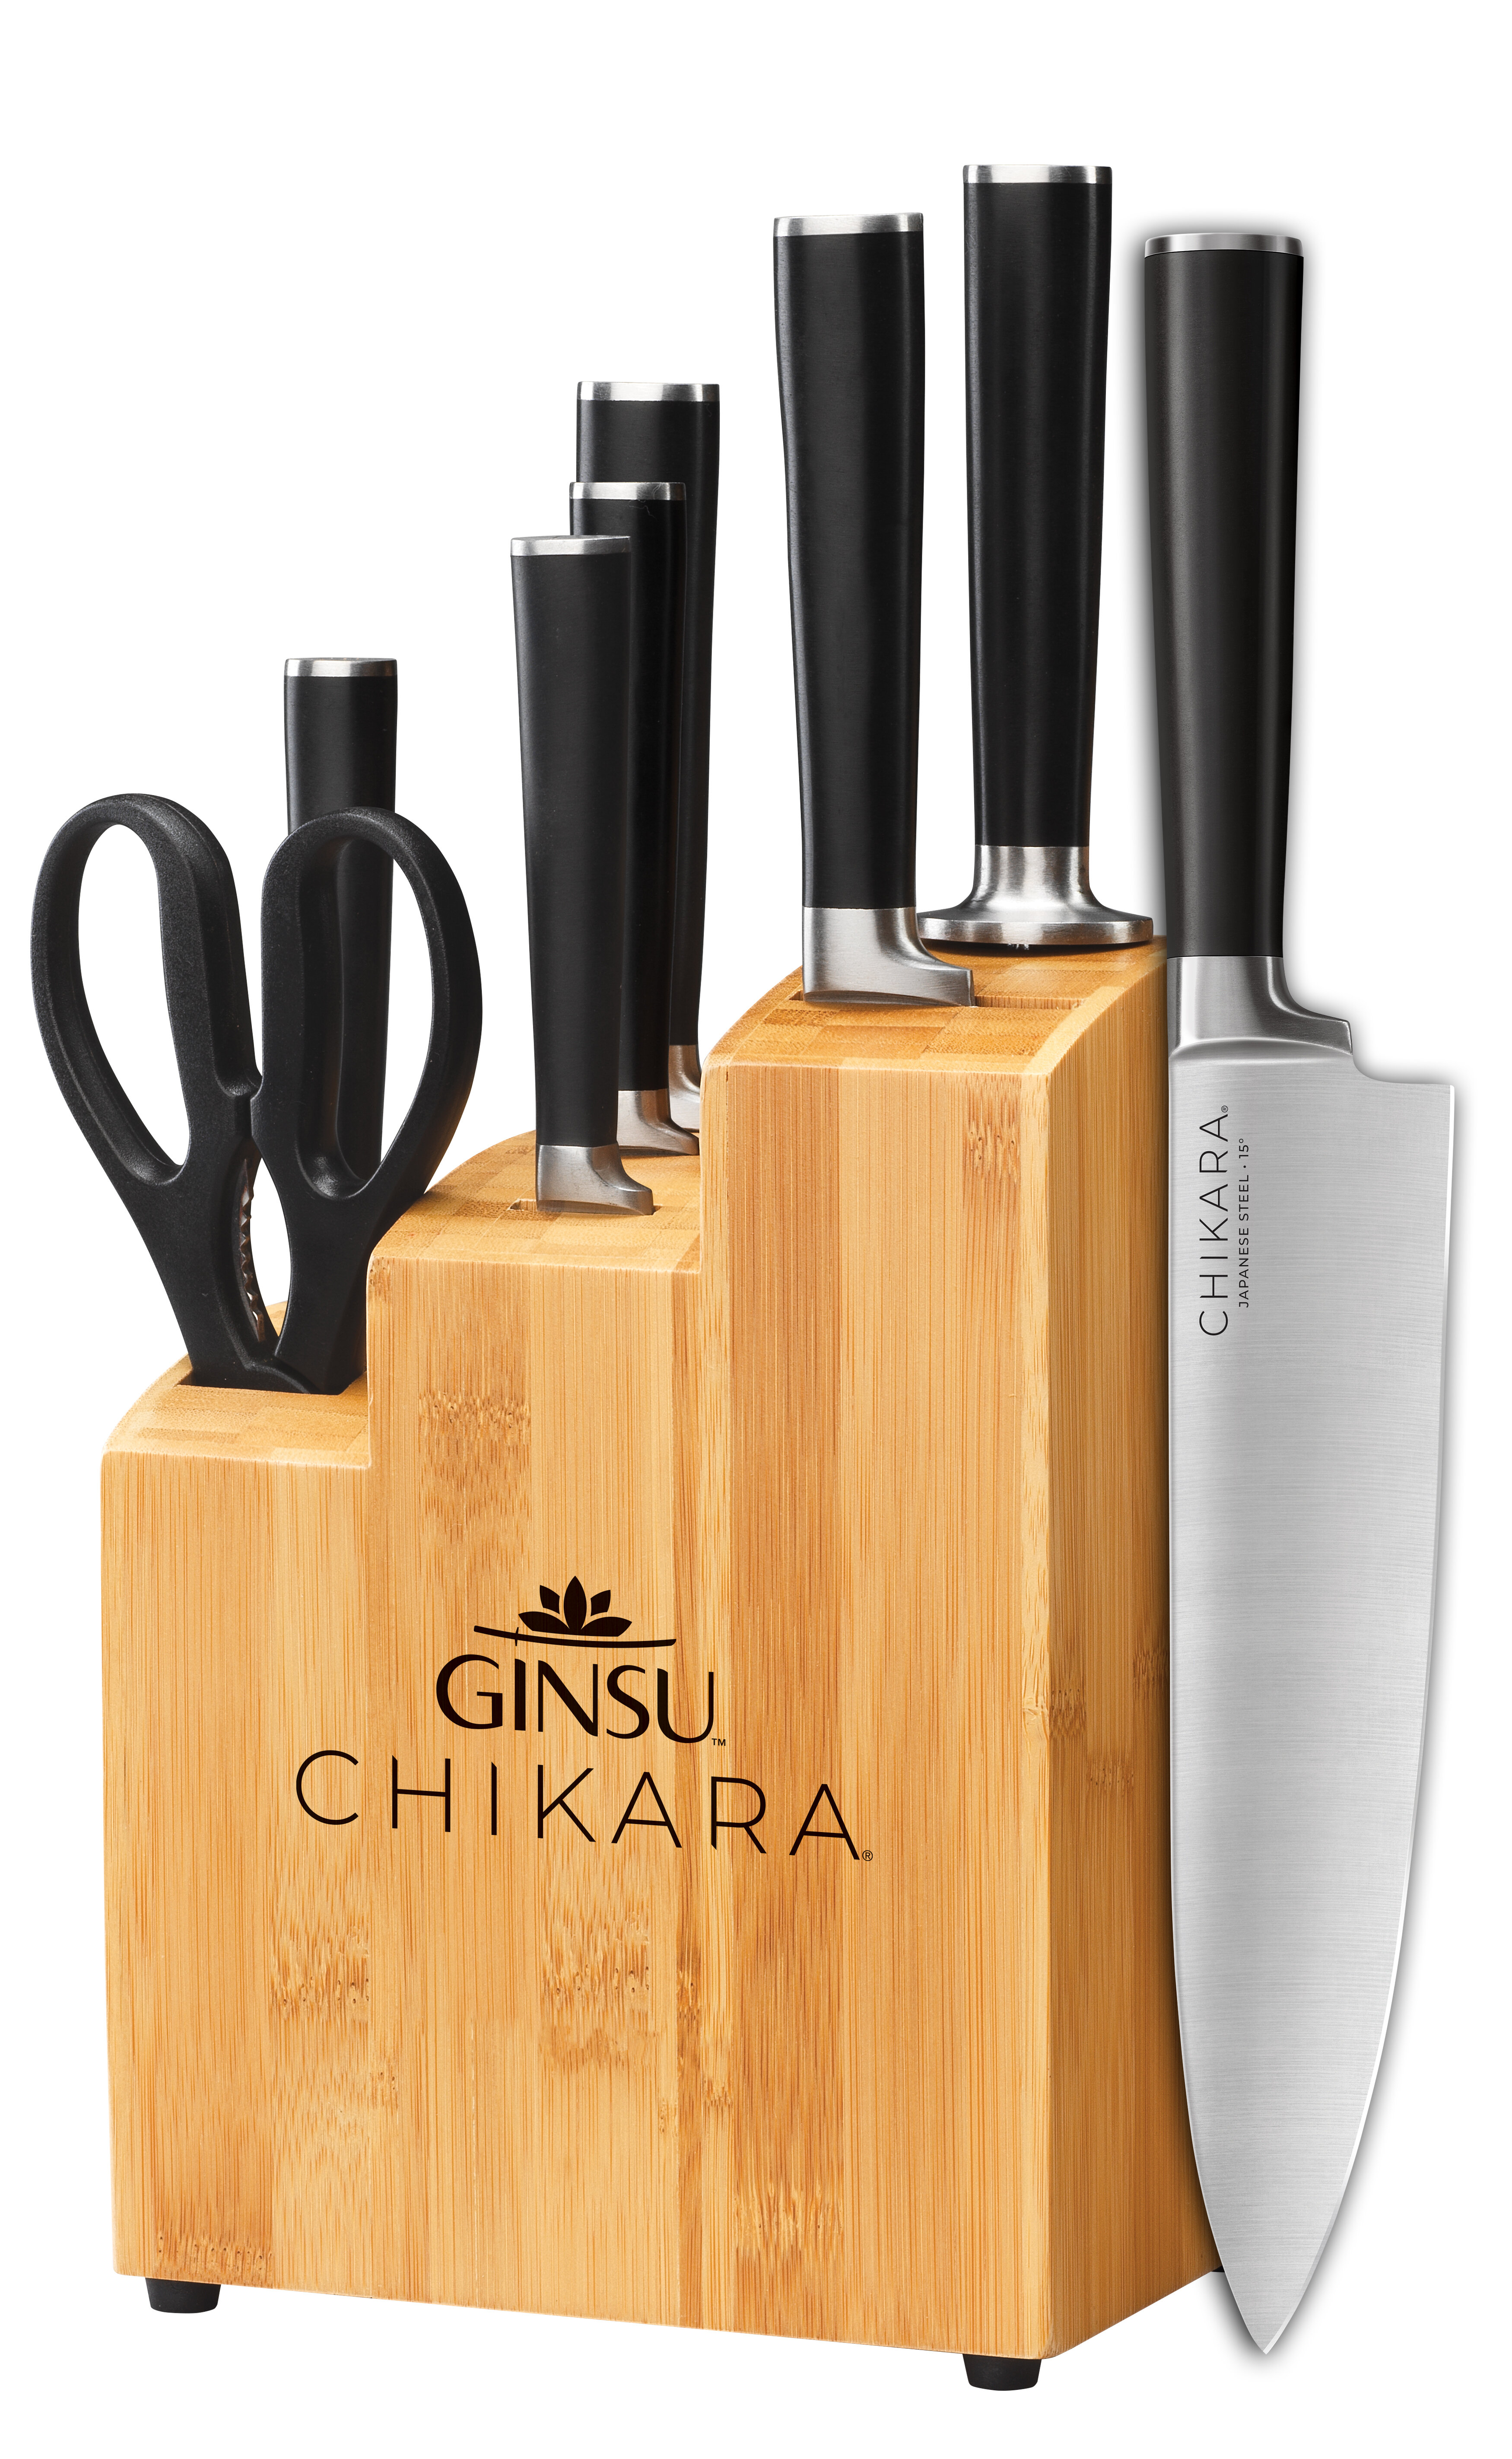 https://assets.wfcdn.com/im/60005266/compr-r85/1104/110416326/ginsu-chikara-series-8-piece-high-carbon-stainless-steel-knife-block-set.jpg